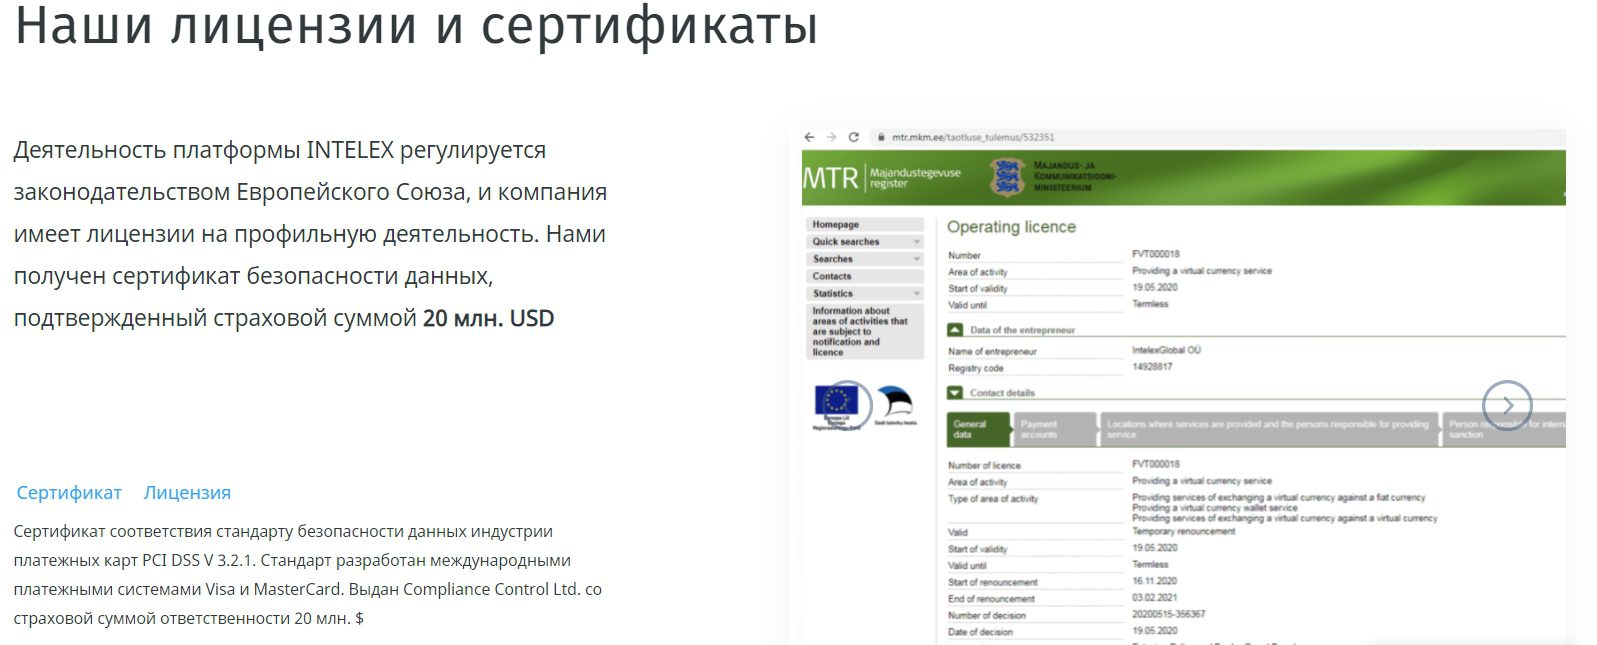 Лицензии и сертификаты Intelex